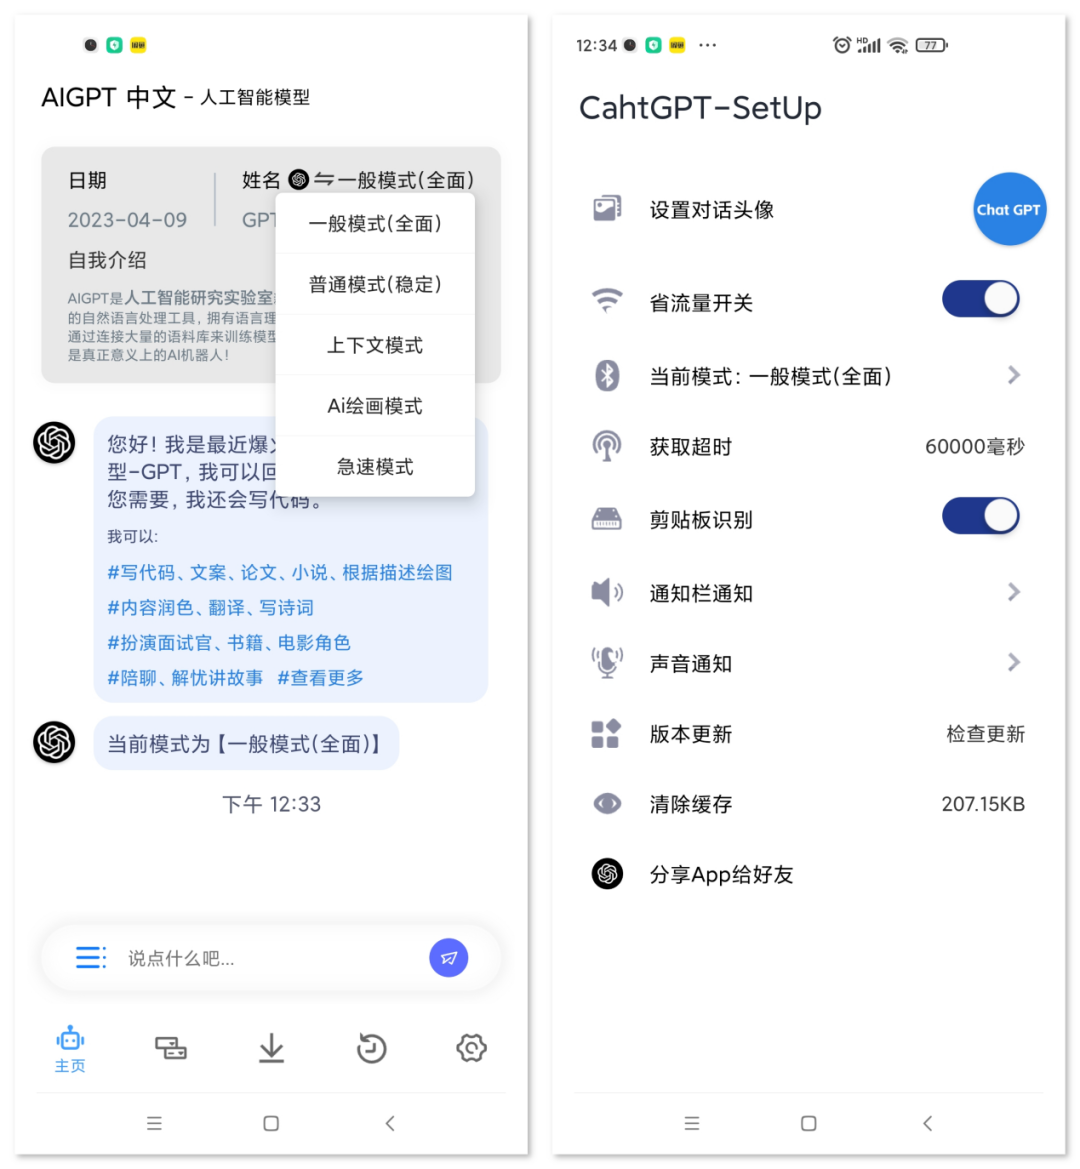 ChatGPT 中文版立即体验享受快乐 更新一波毅世纪资源网-毅世纪博客-毅世纪资源分享毅世纪资源